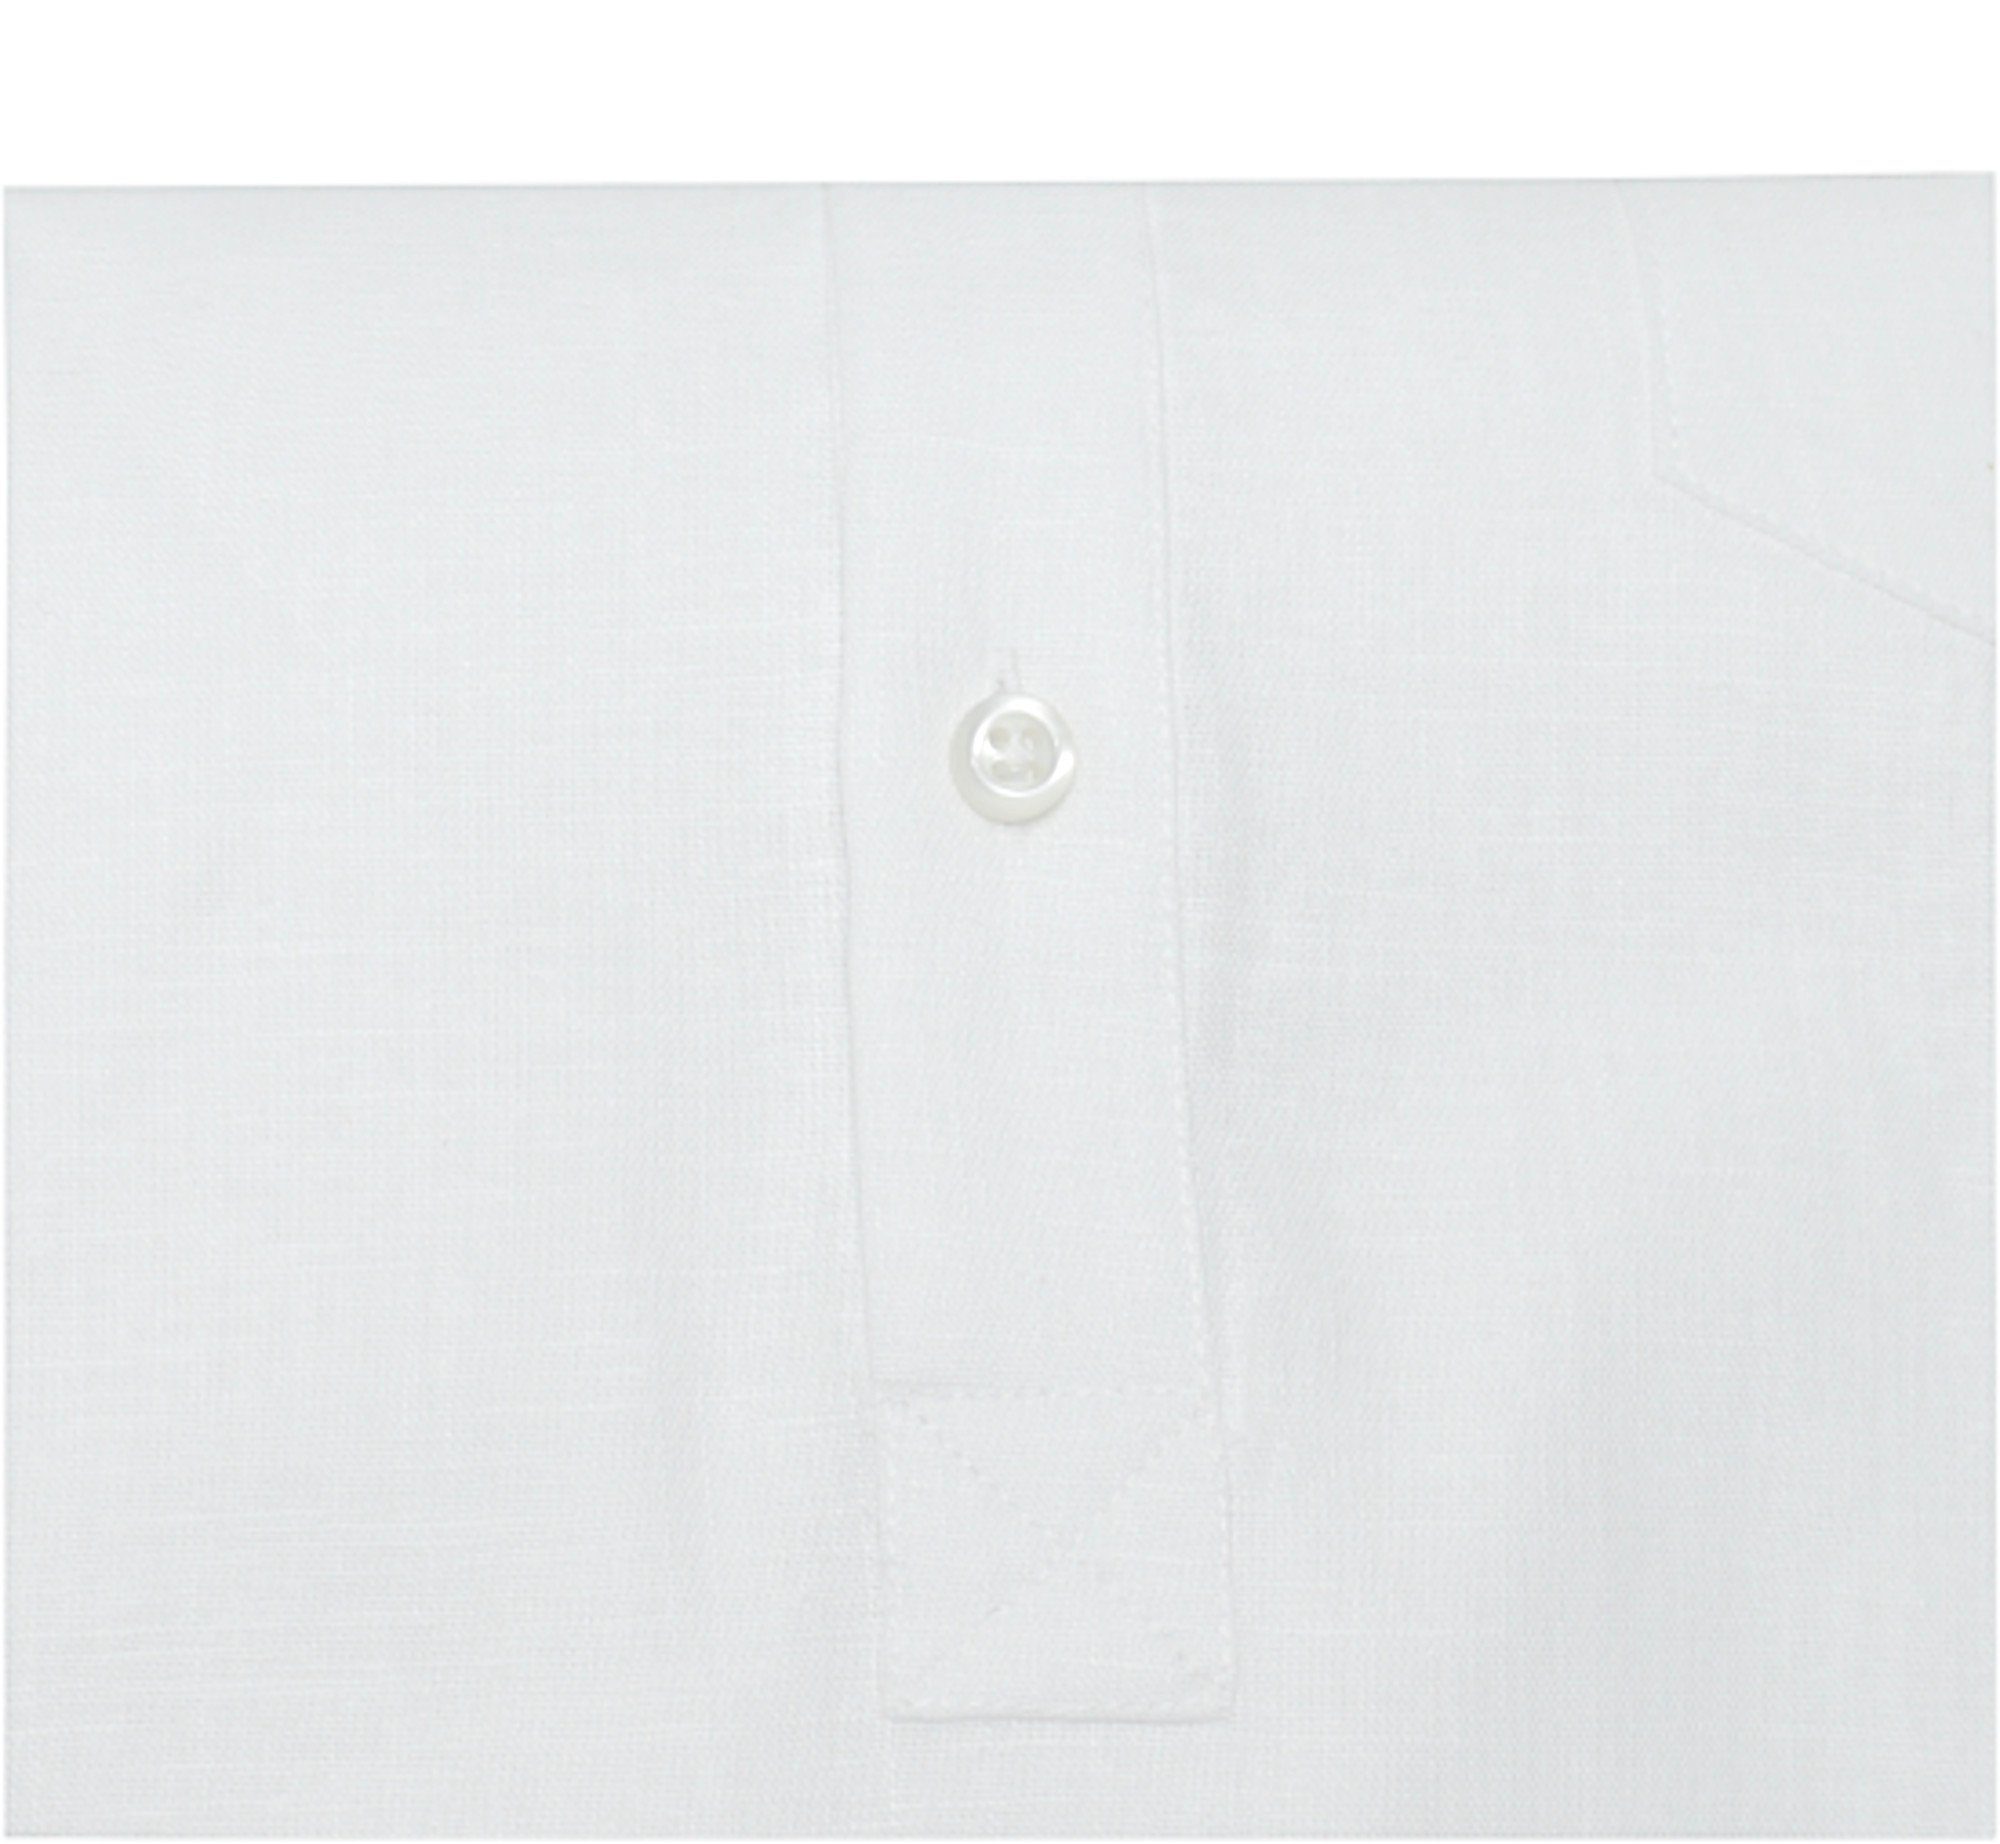 Huber Hemden Leinenhemd HU-0501 Schlupfhemd Stehkragen, EU weiß mit Made Regular in 100% Leinen